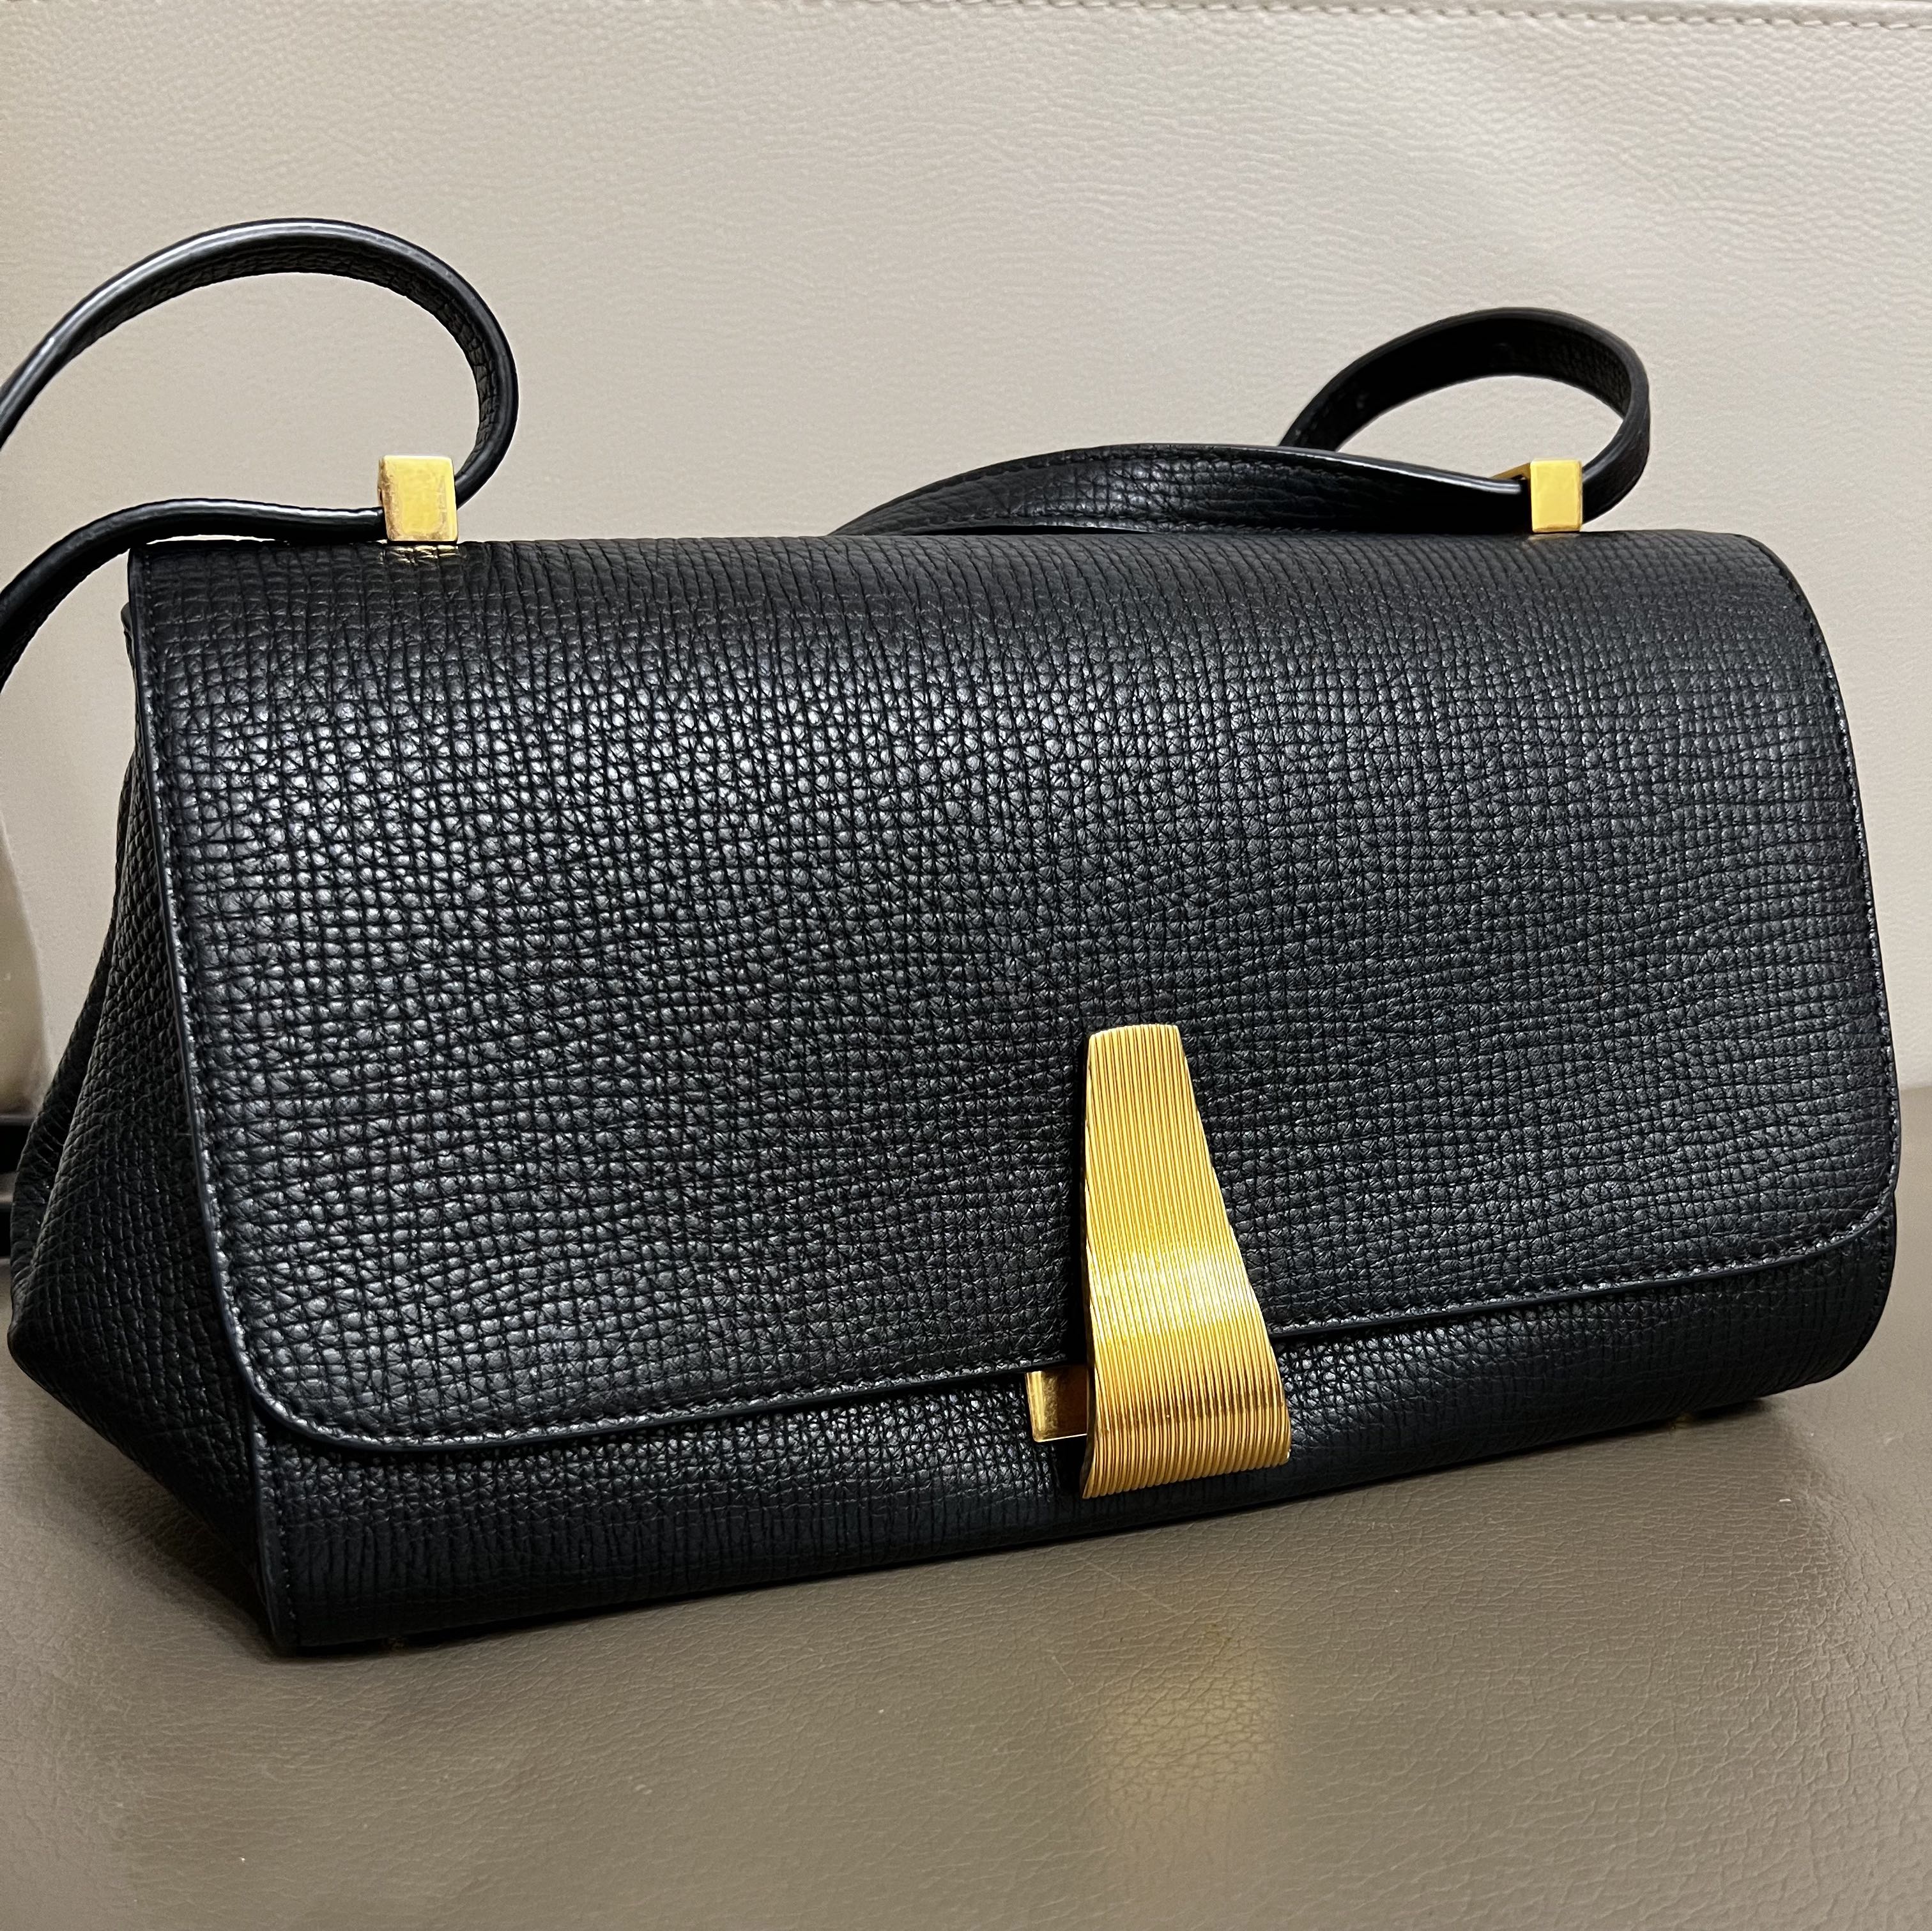 Bv angle leather bag Bottega Veneta Navy in Leather - 22479813